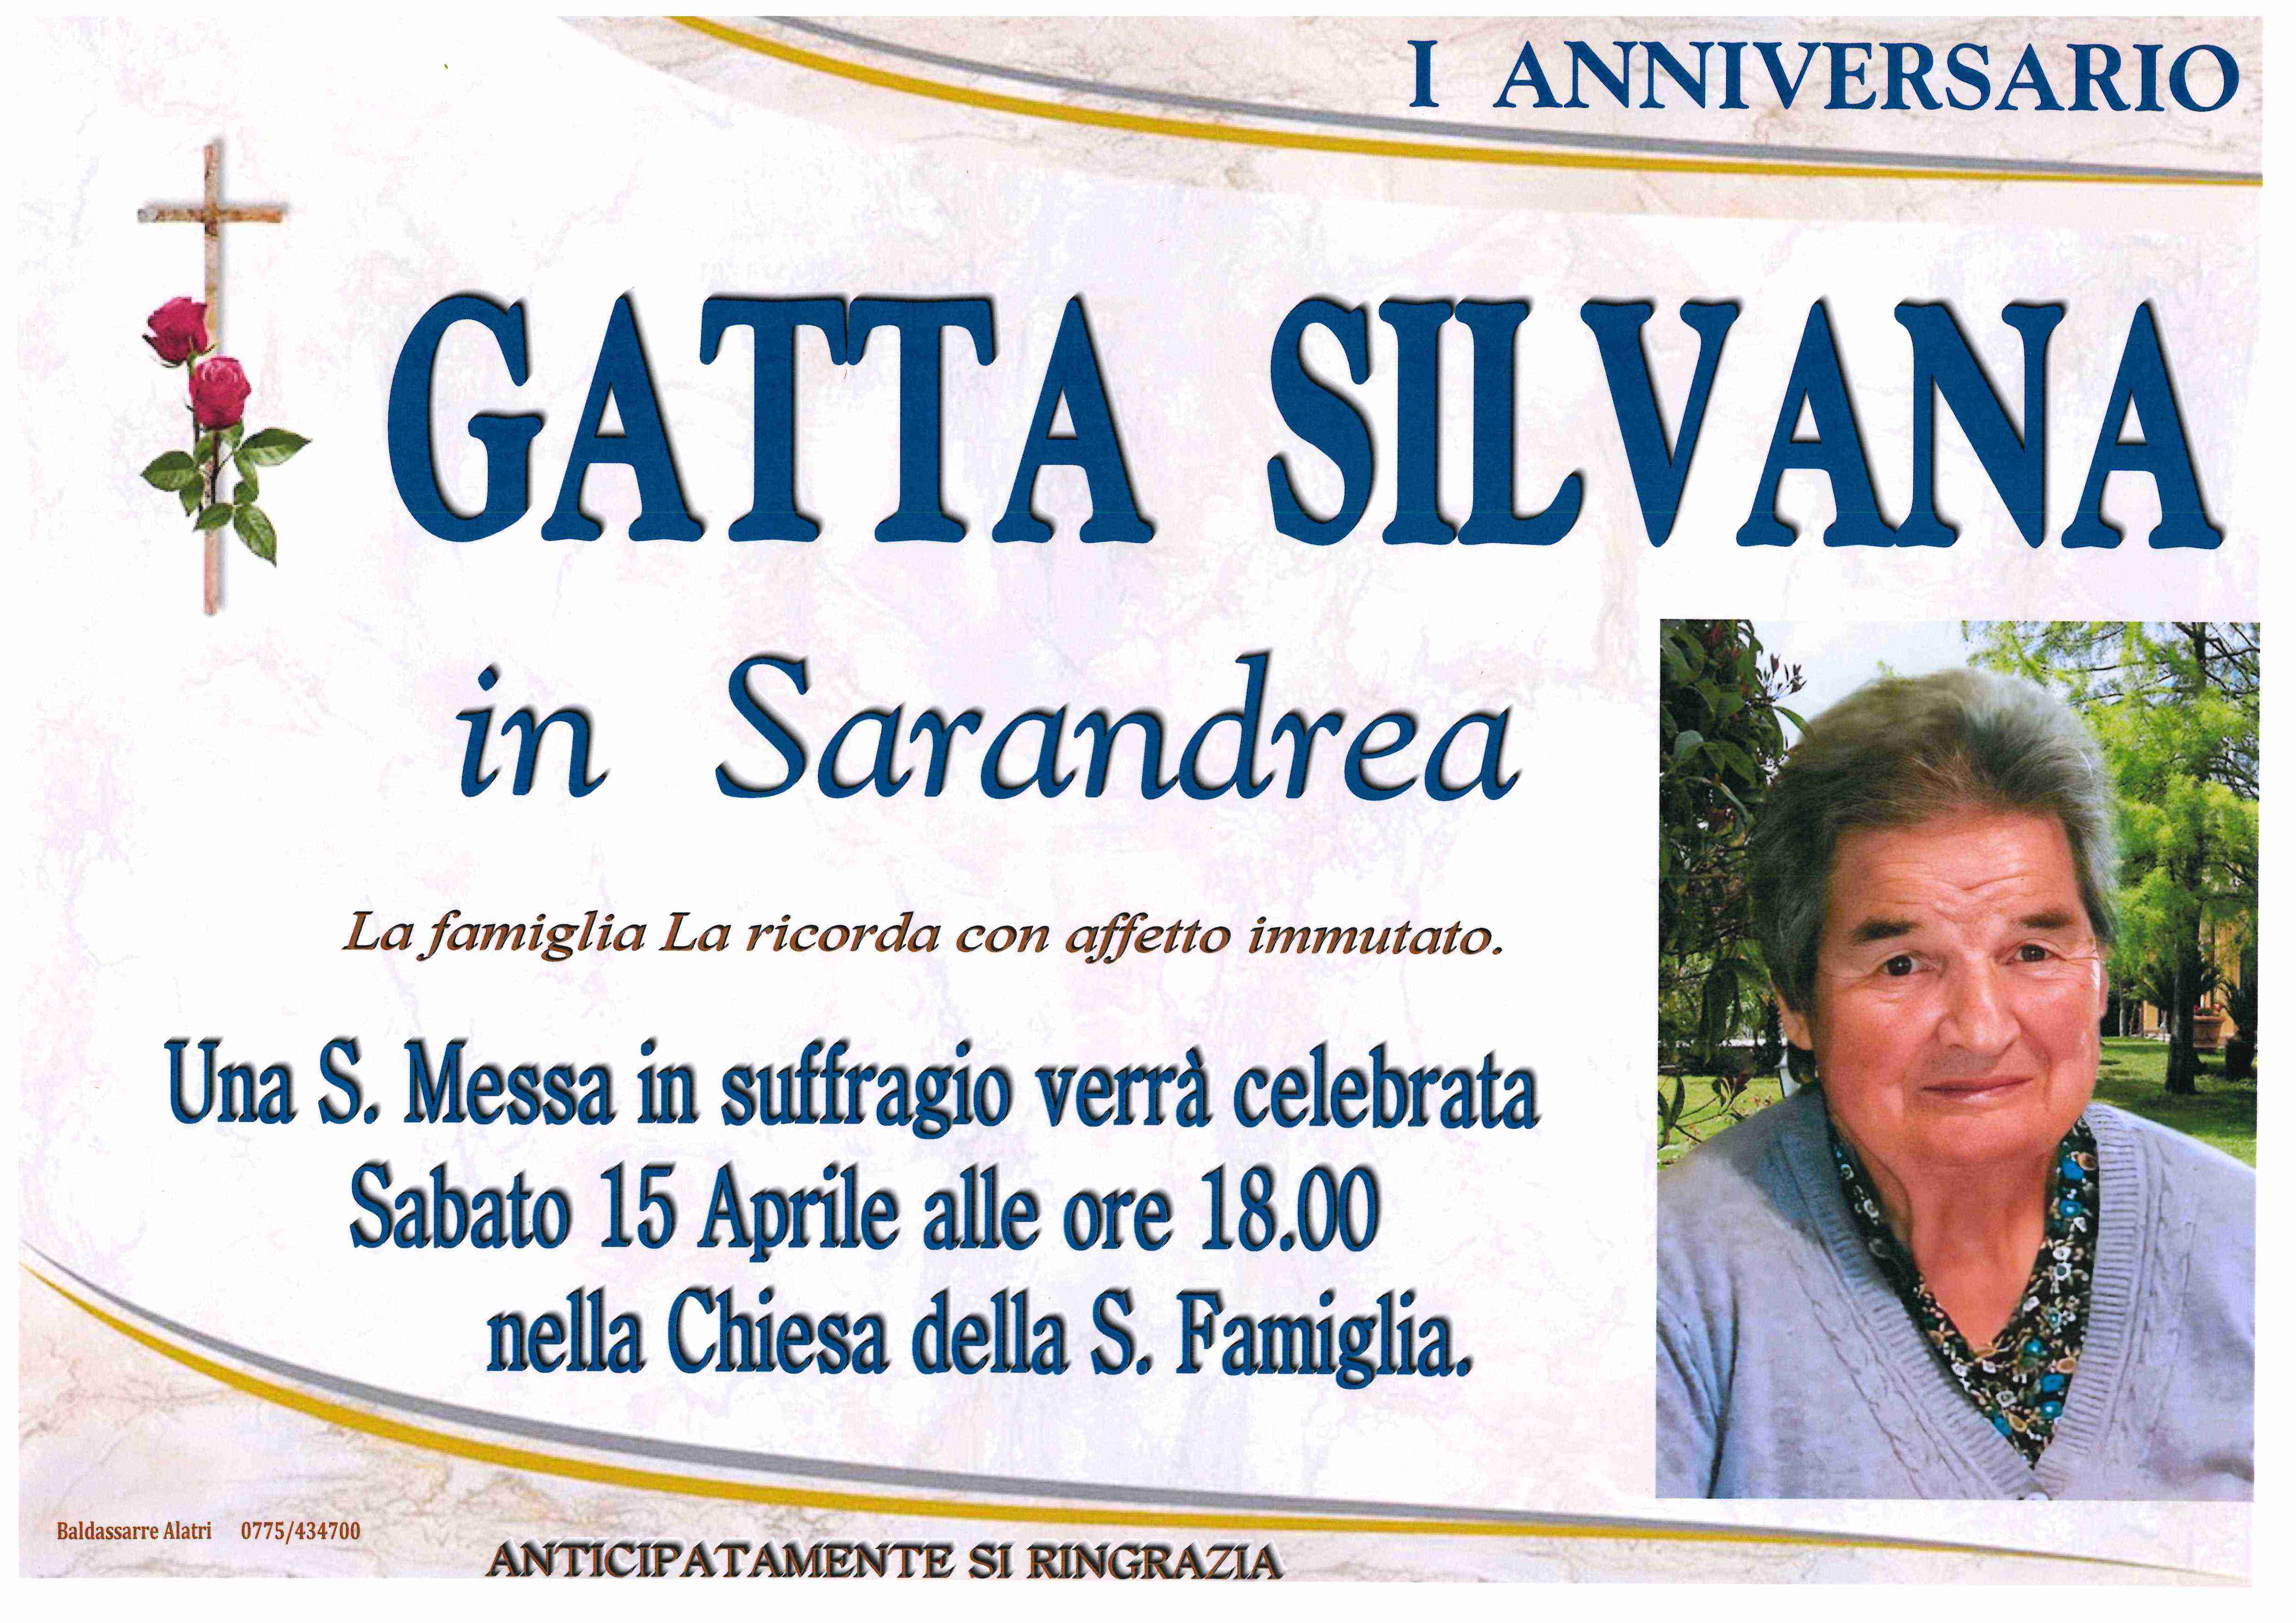 Silvana Gatta